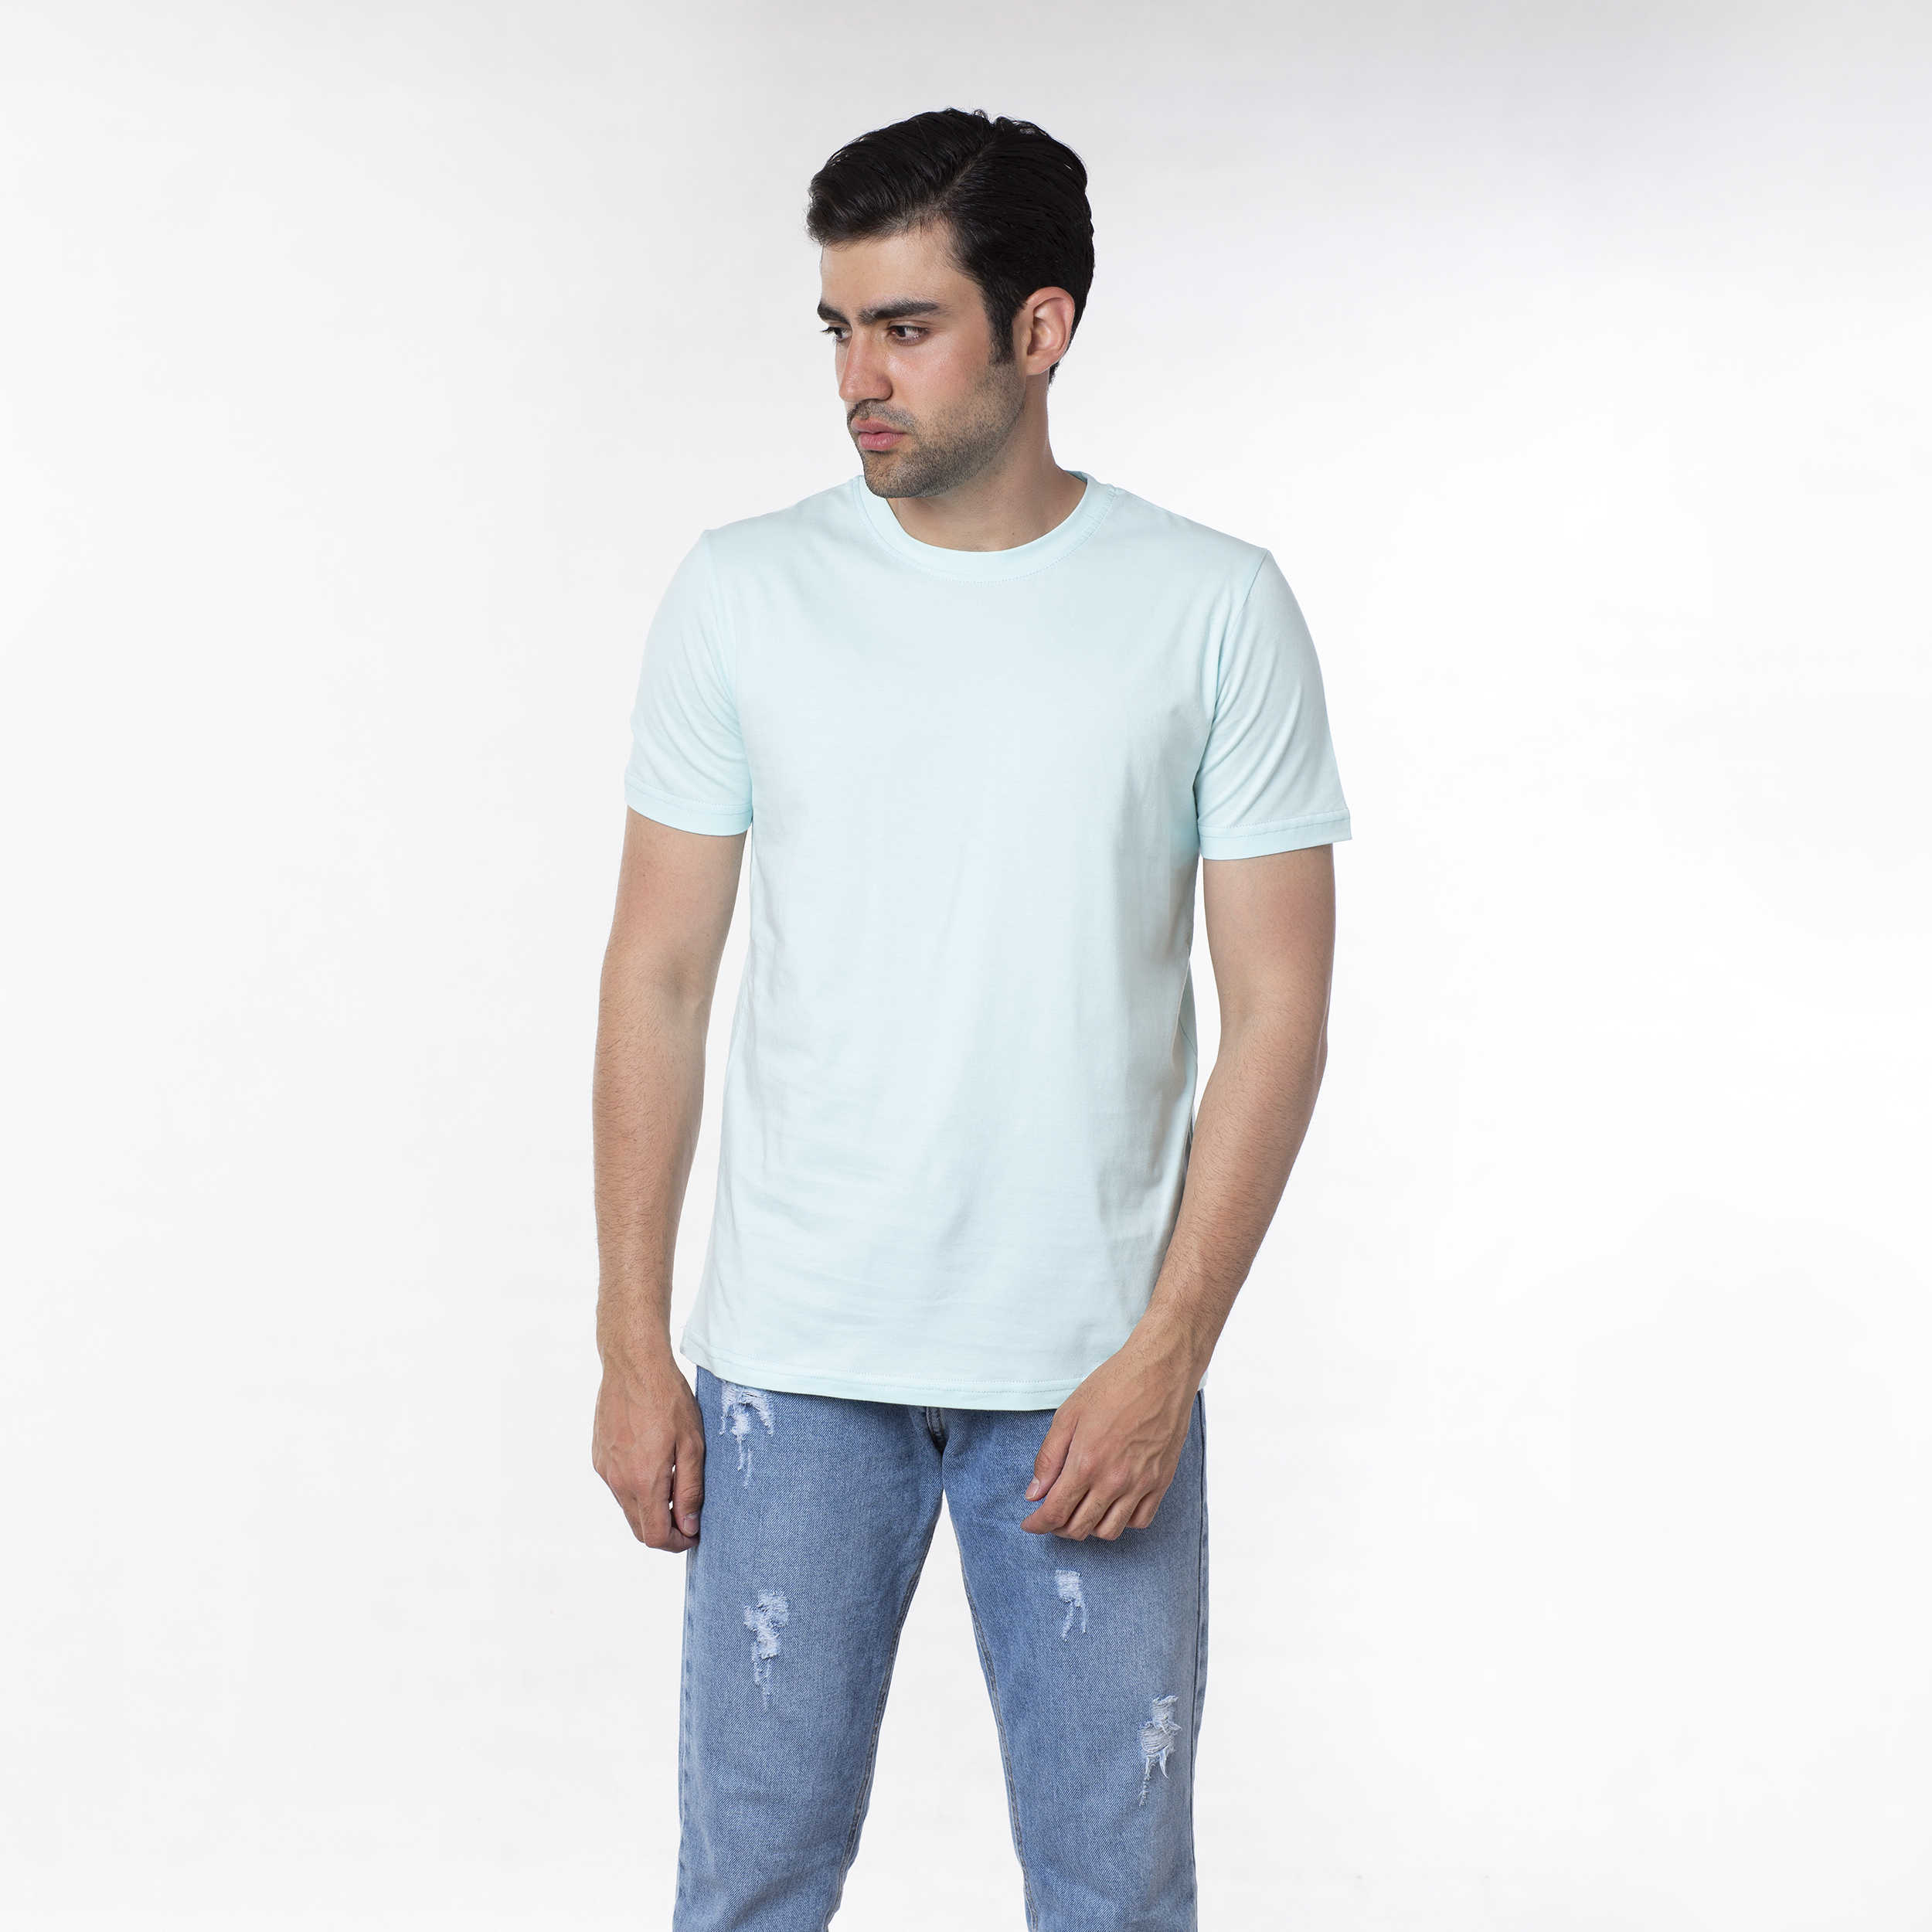 نکته خرید - قیمت روز تی شرت مردانه ایزی دو مدل 218114950 خرید